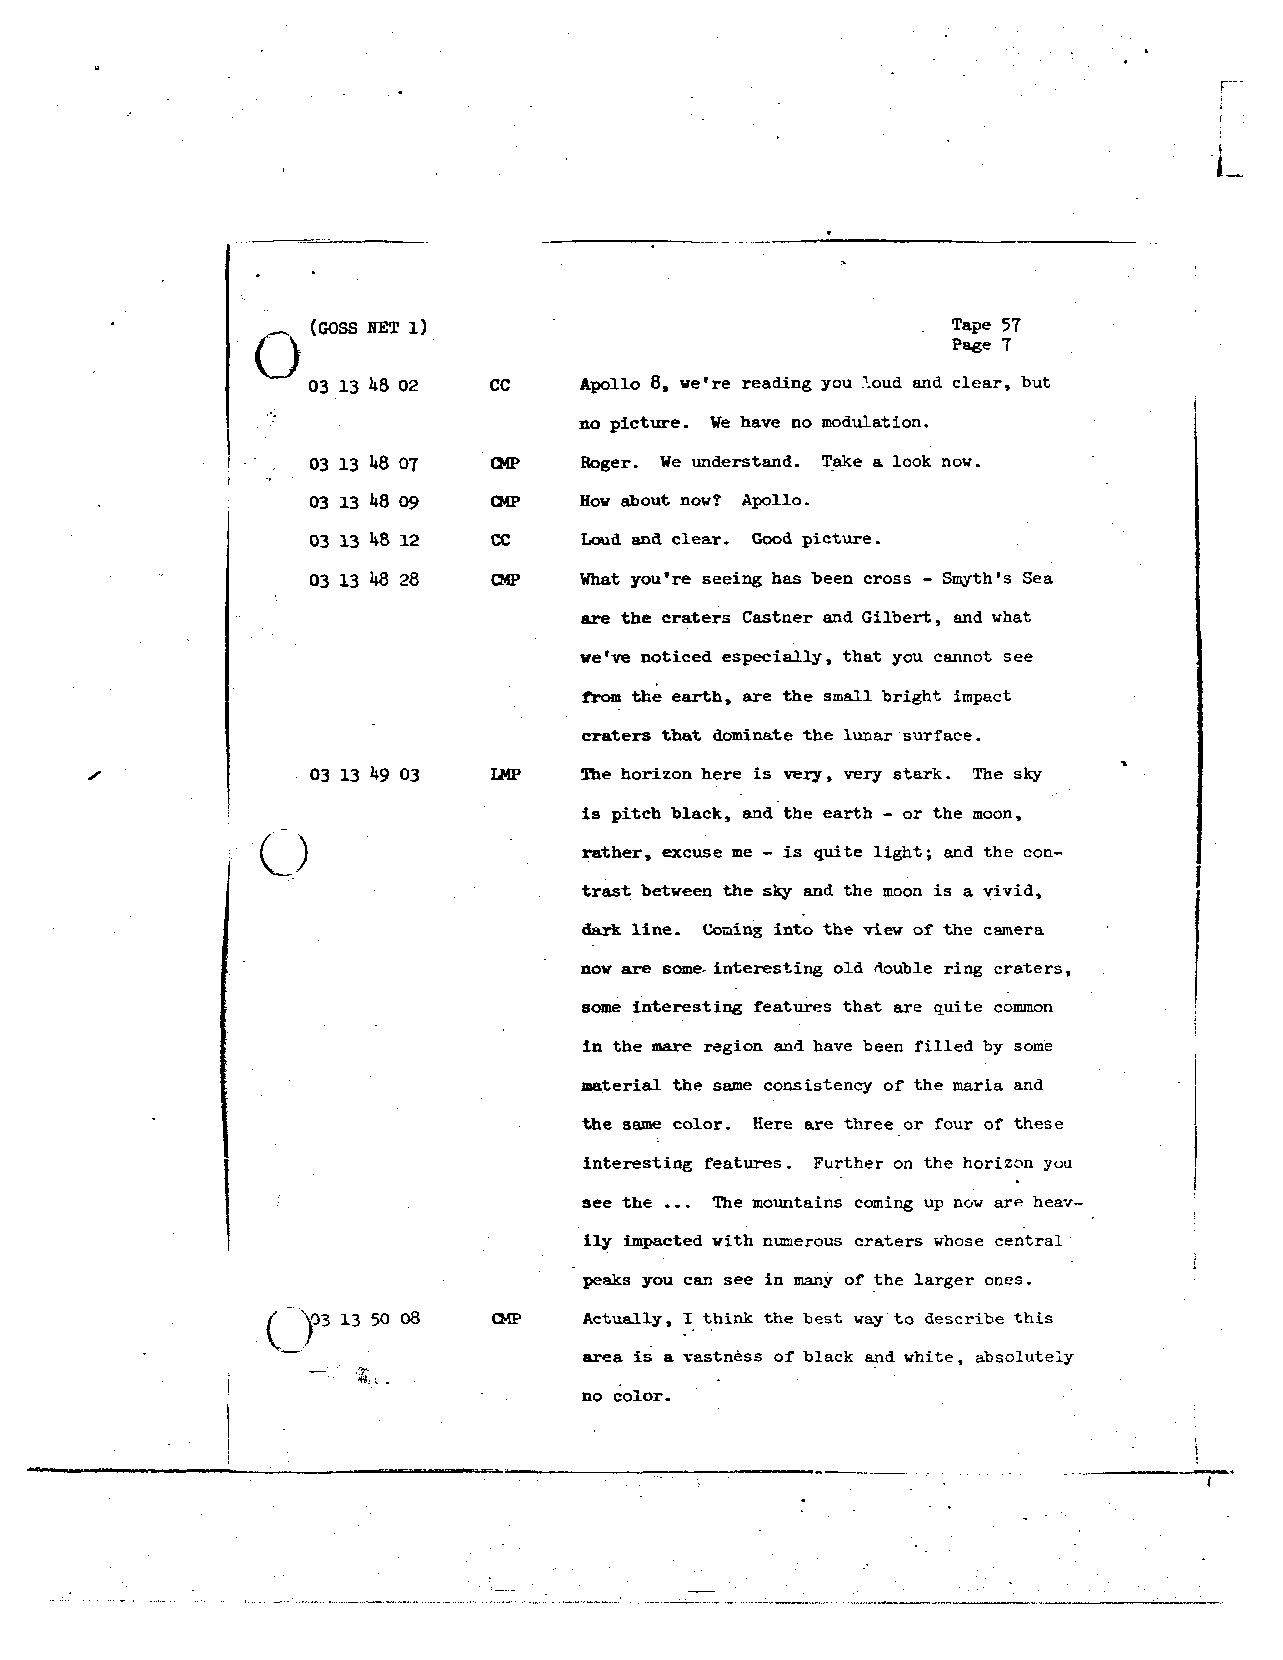 Page 456 of Apollo 8’s original transcript